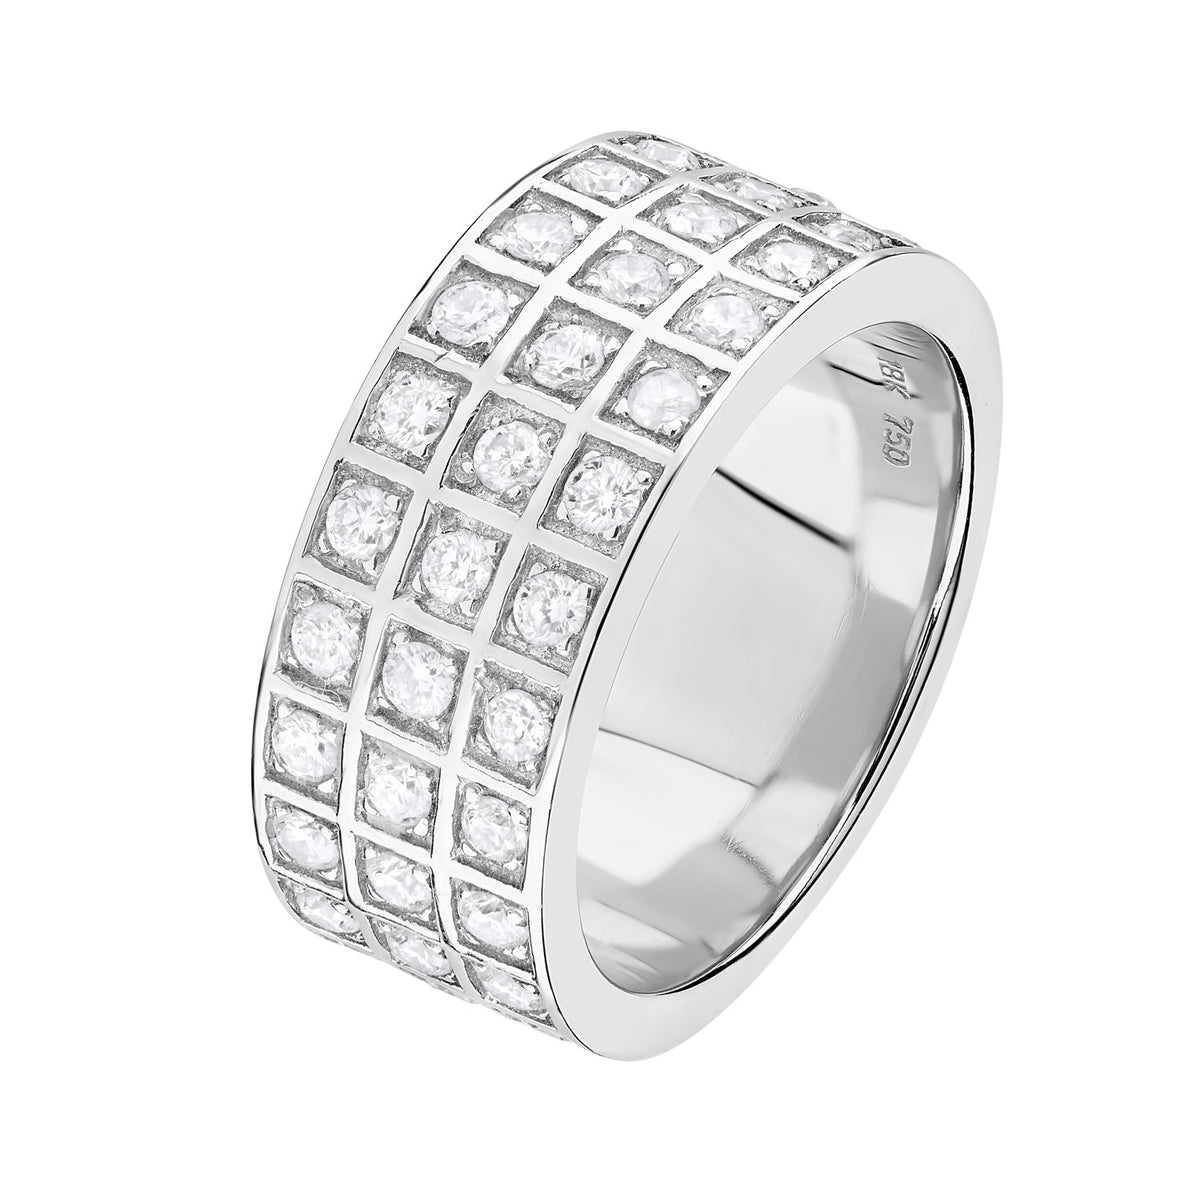 White Gold Diamond Ring 3 Row